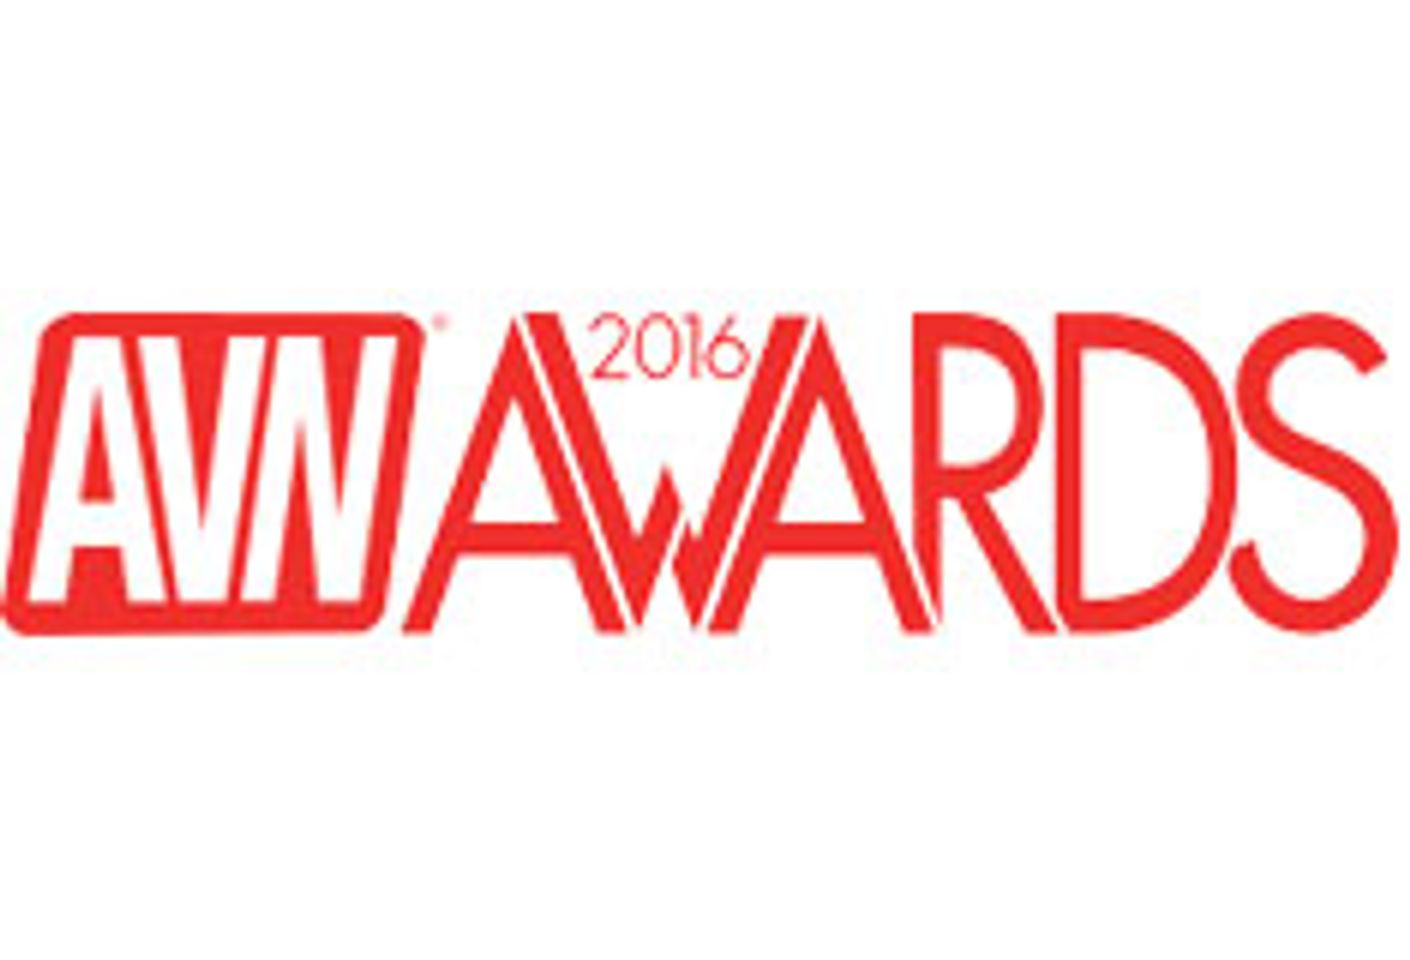 Sarah Vandella Nommed For Best Actress, More For 2016 AVN Awards